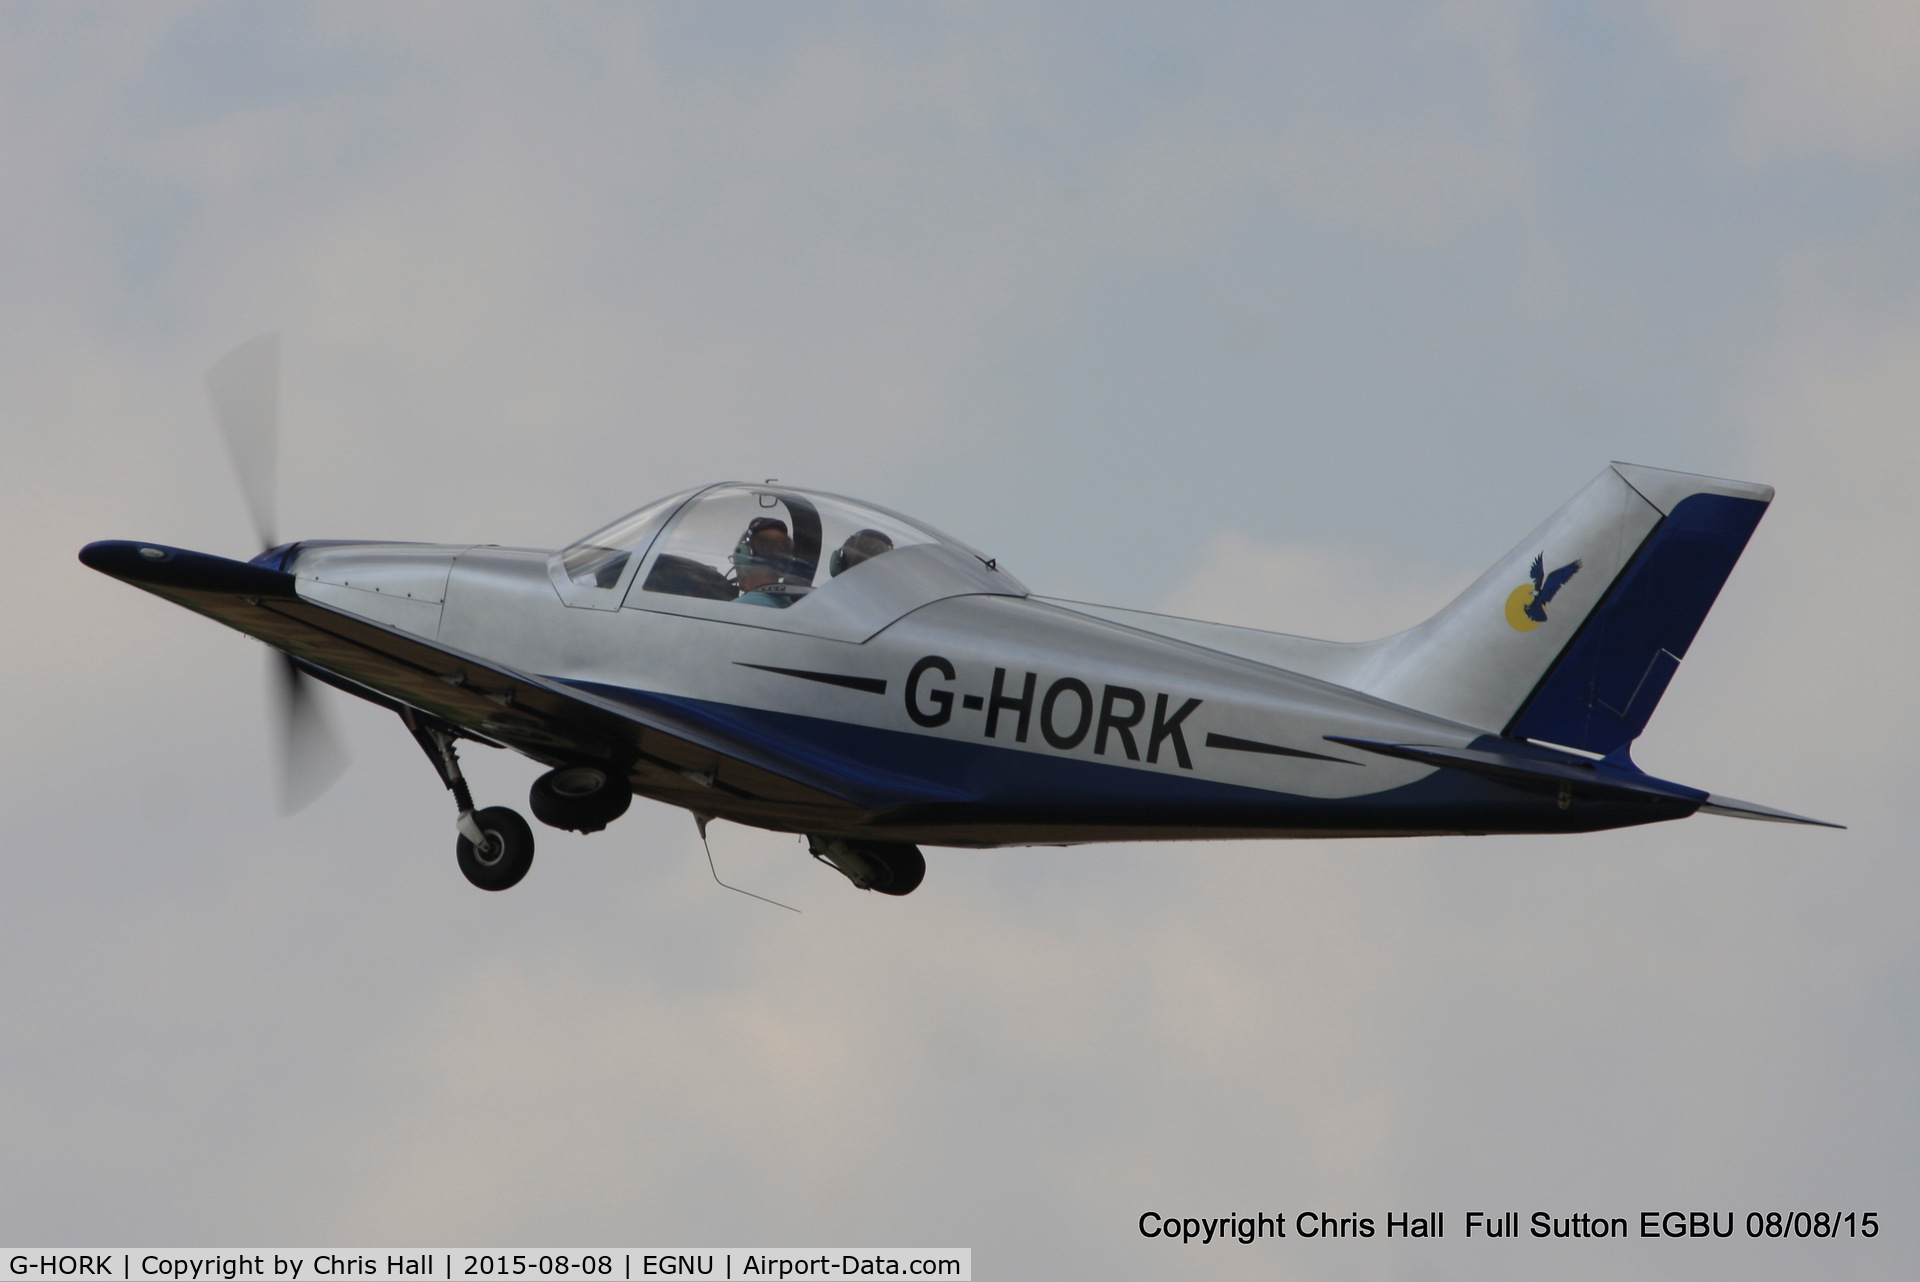 G-HORK, 2007 Alpi Aviation Pioneer 300 Hawk C/N PFA 330A-14741, at the Vale of York LAA strut flyin, Full Sutton